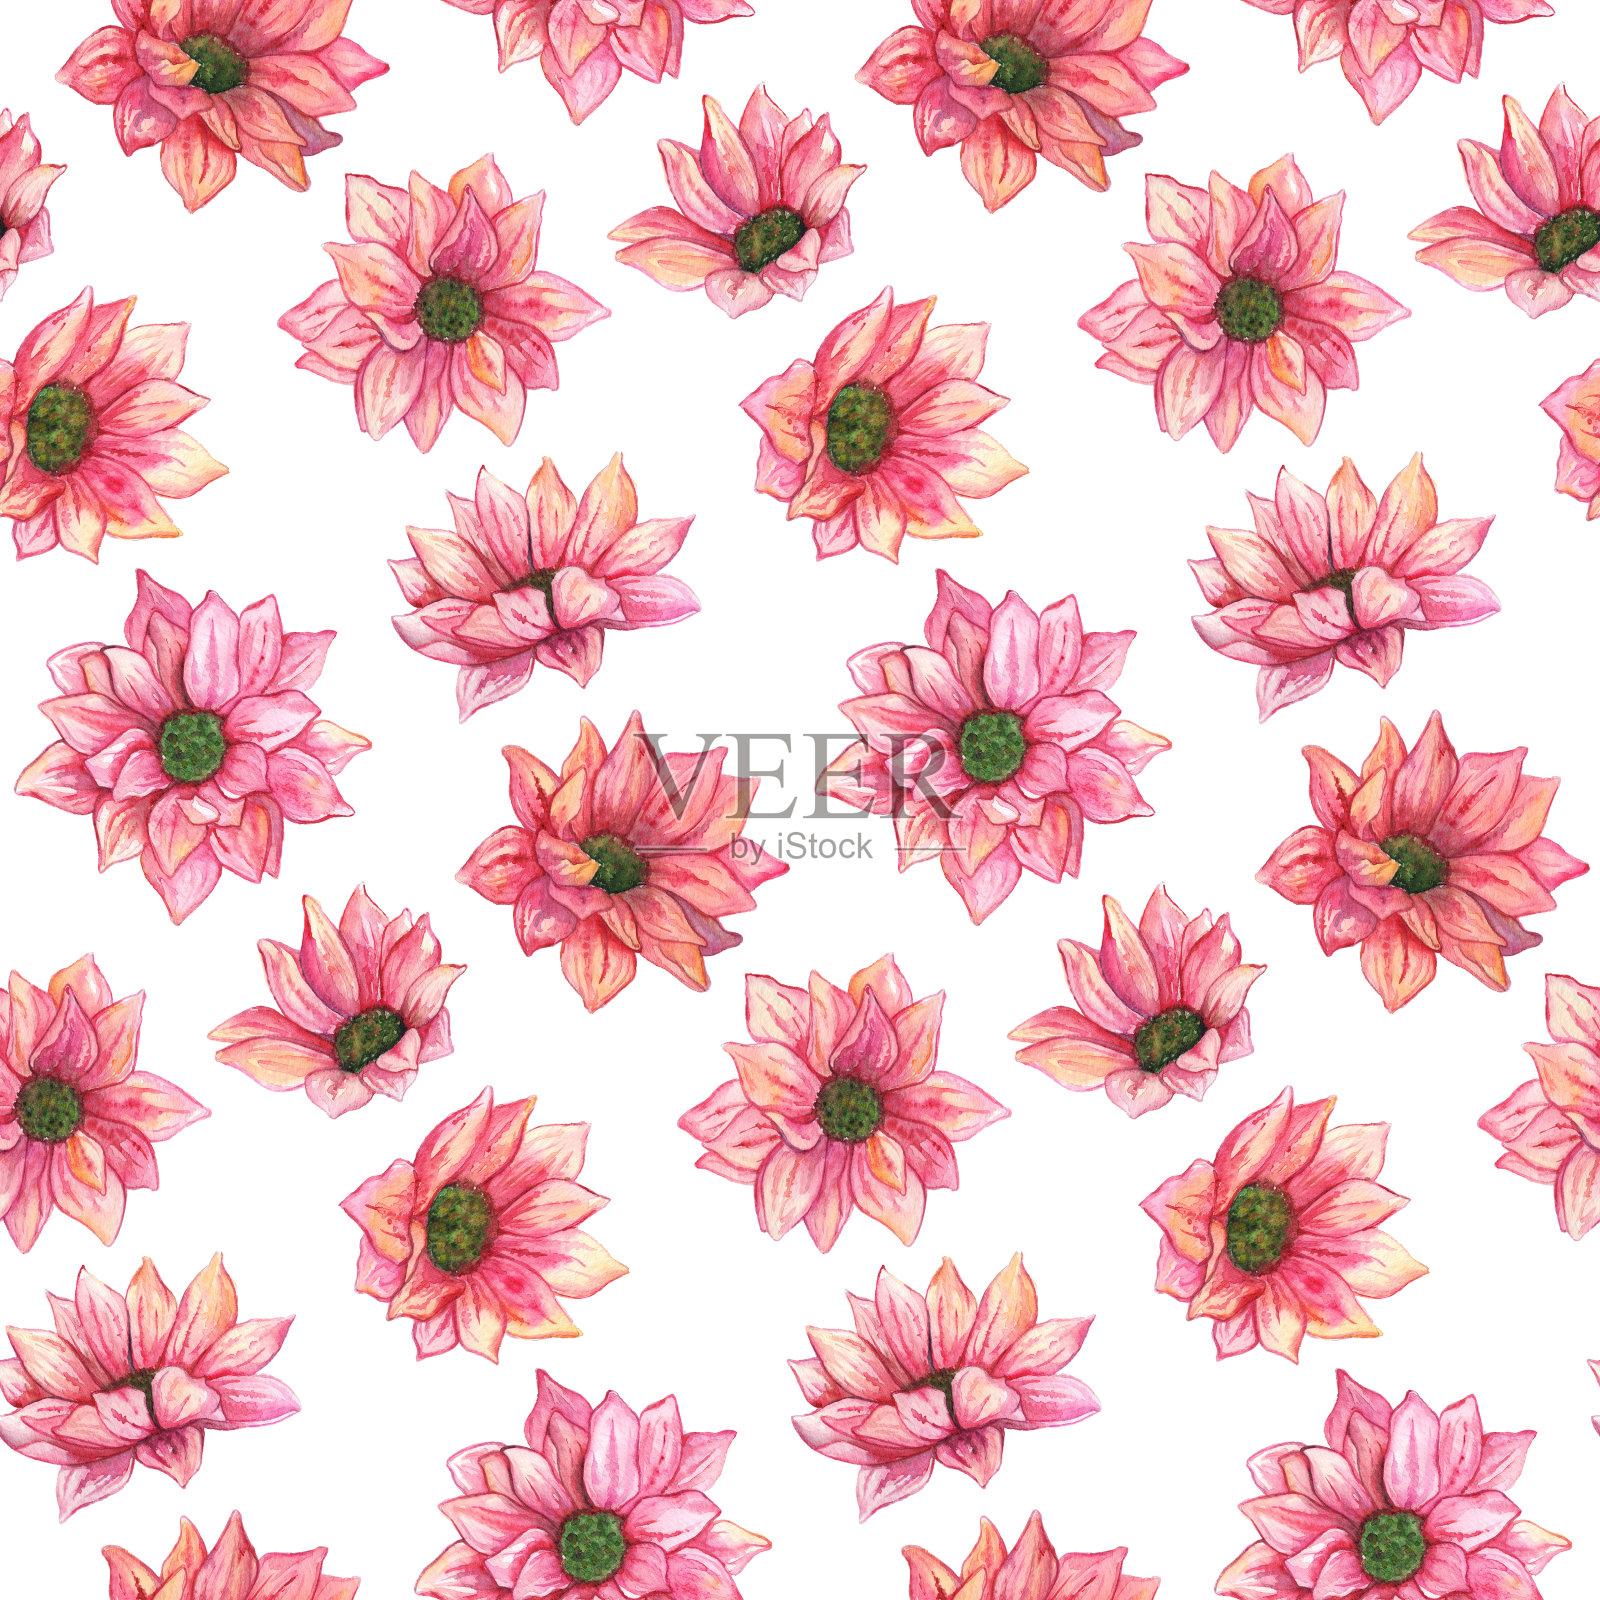 水彩粉红菊花无缝花纹纹理背景插画图片素材